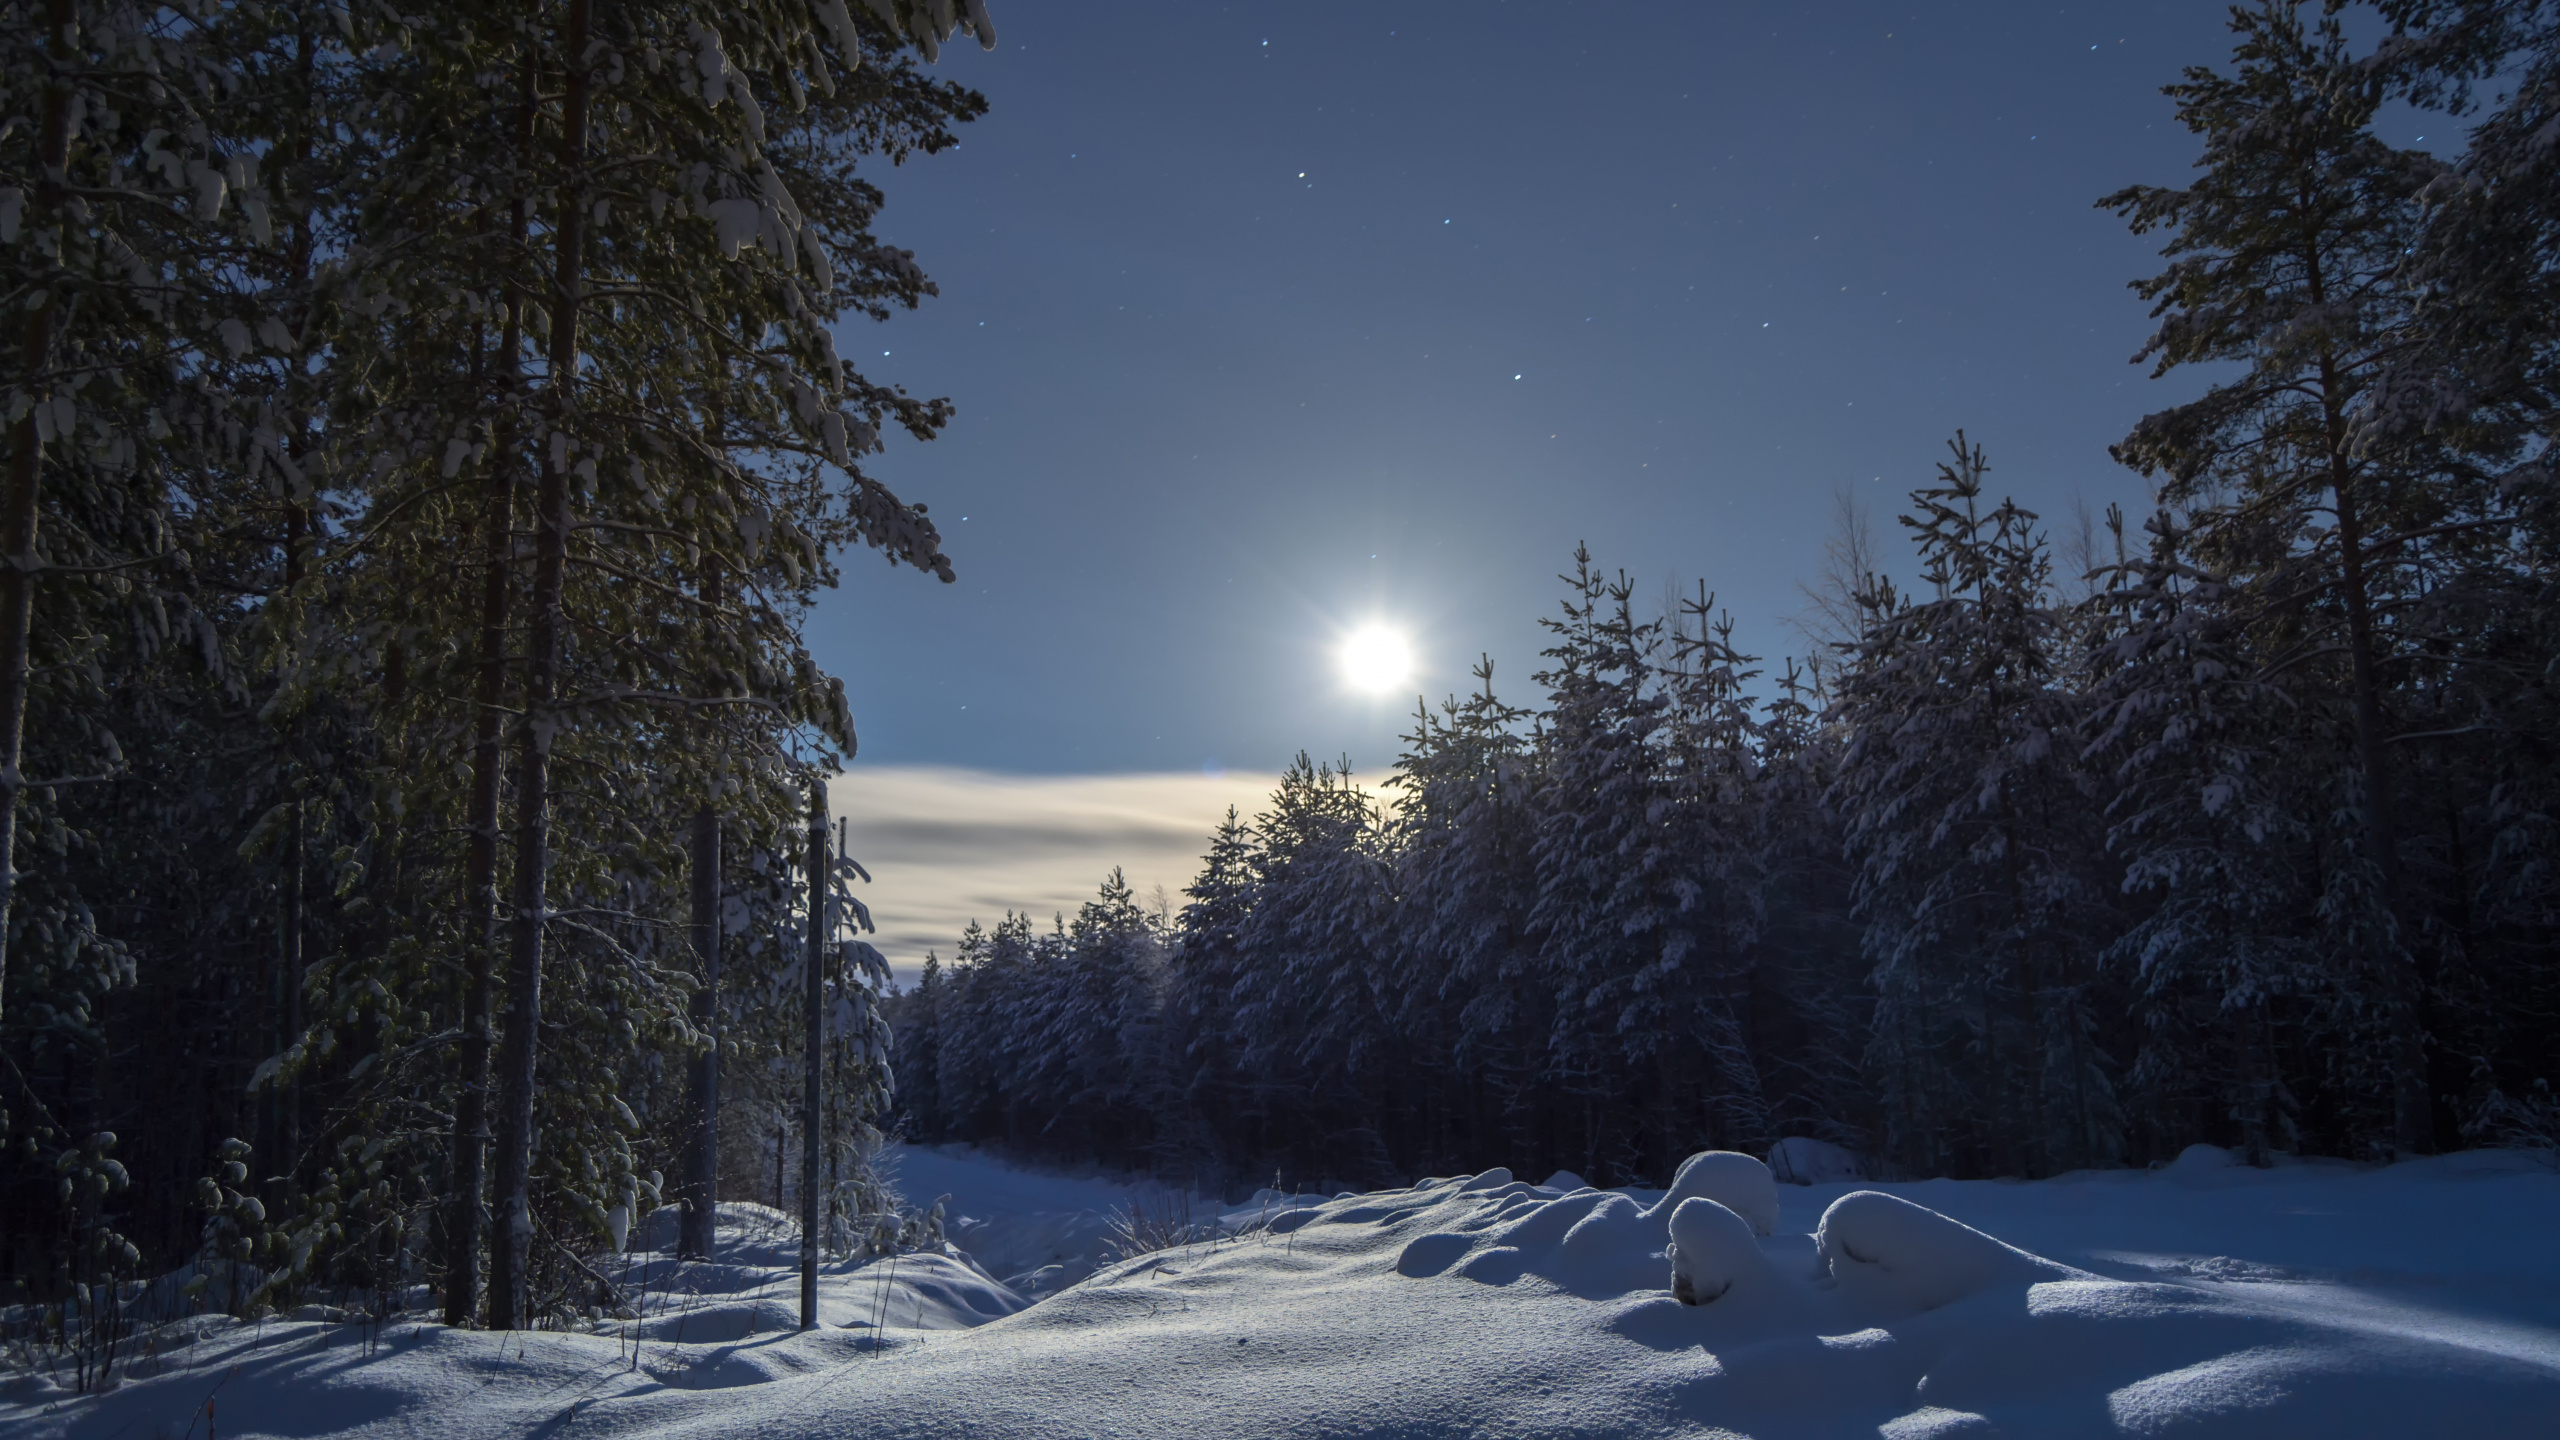 冬天, 性质, 冻结, 月光, 气氛 壁纸 2560x1440 允许